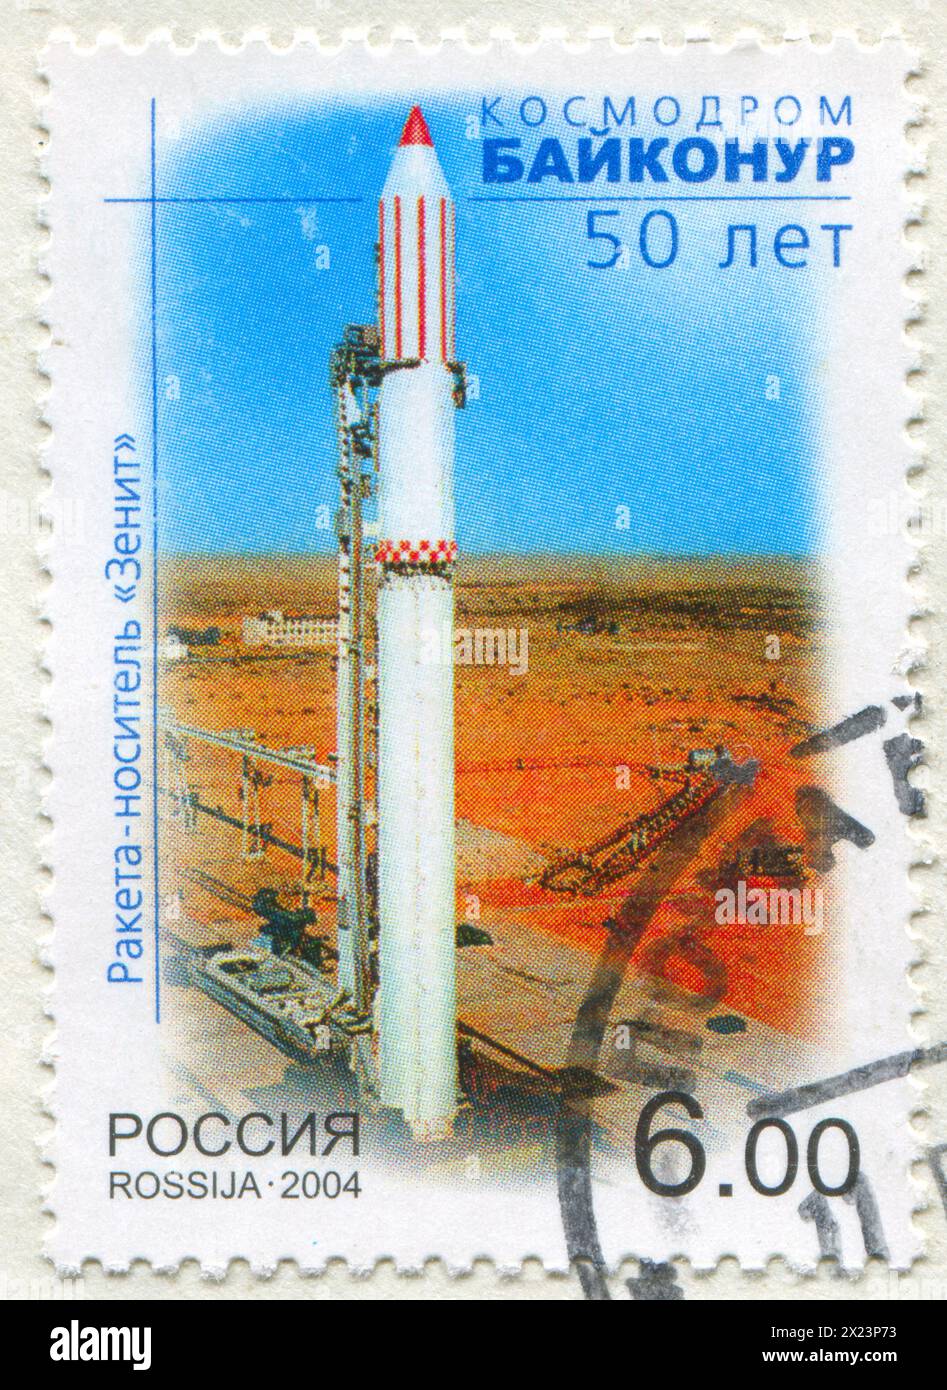 RUSSIE - VERS 2004 : timbre imprimé par la Russie, montre la fusée Zenit au cosmodrome de Baïkonour, vers 2004 Banque D'Images